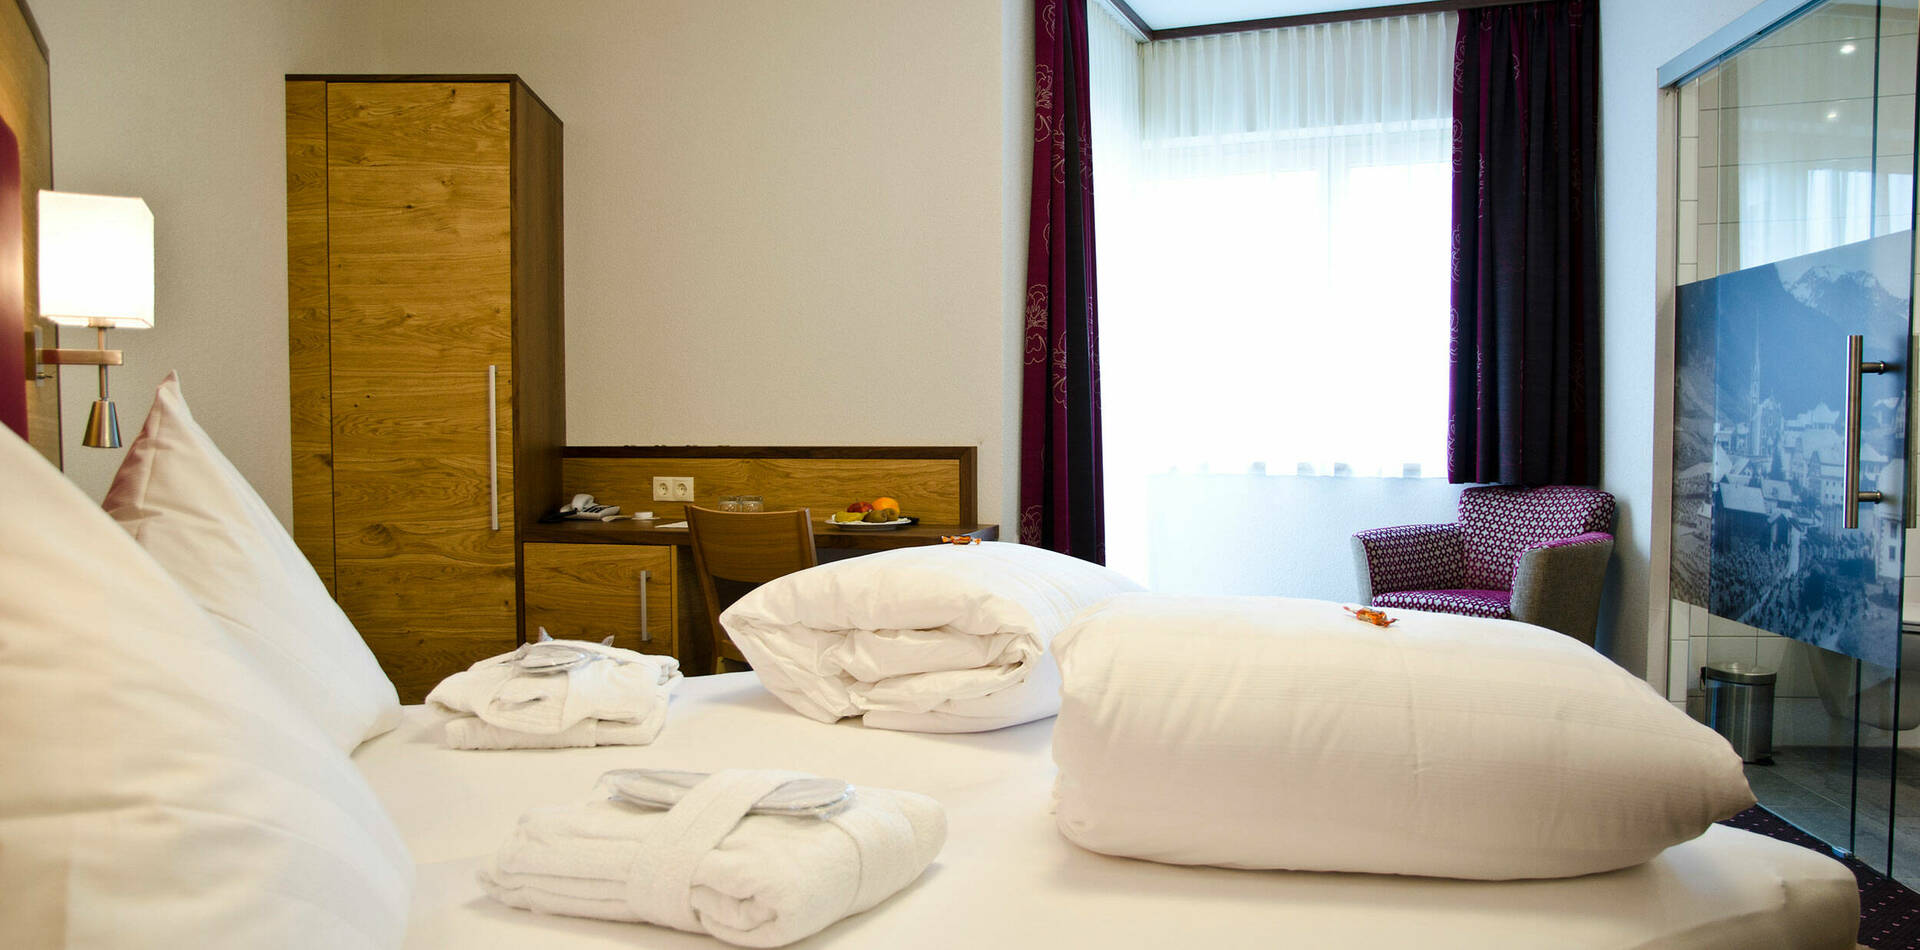 Doppelzimmer im Hotel - Garni Arosa in Ischgl 